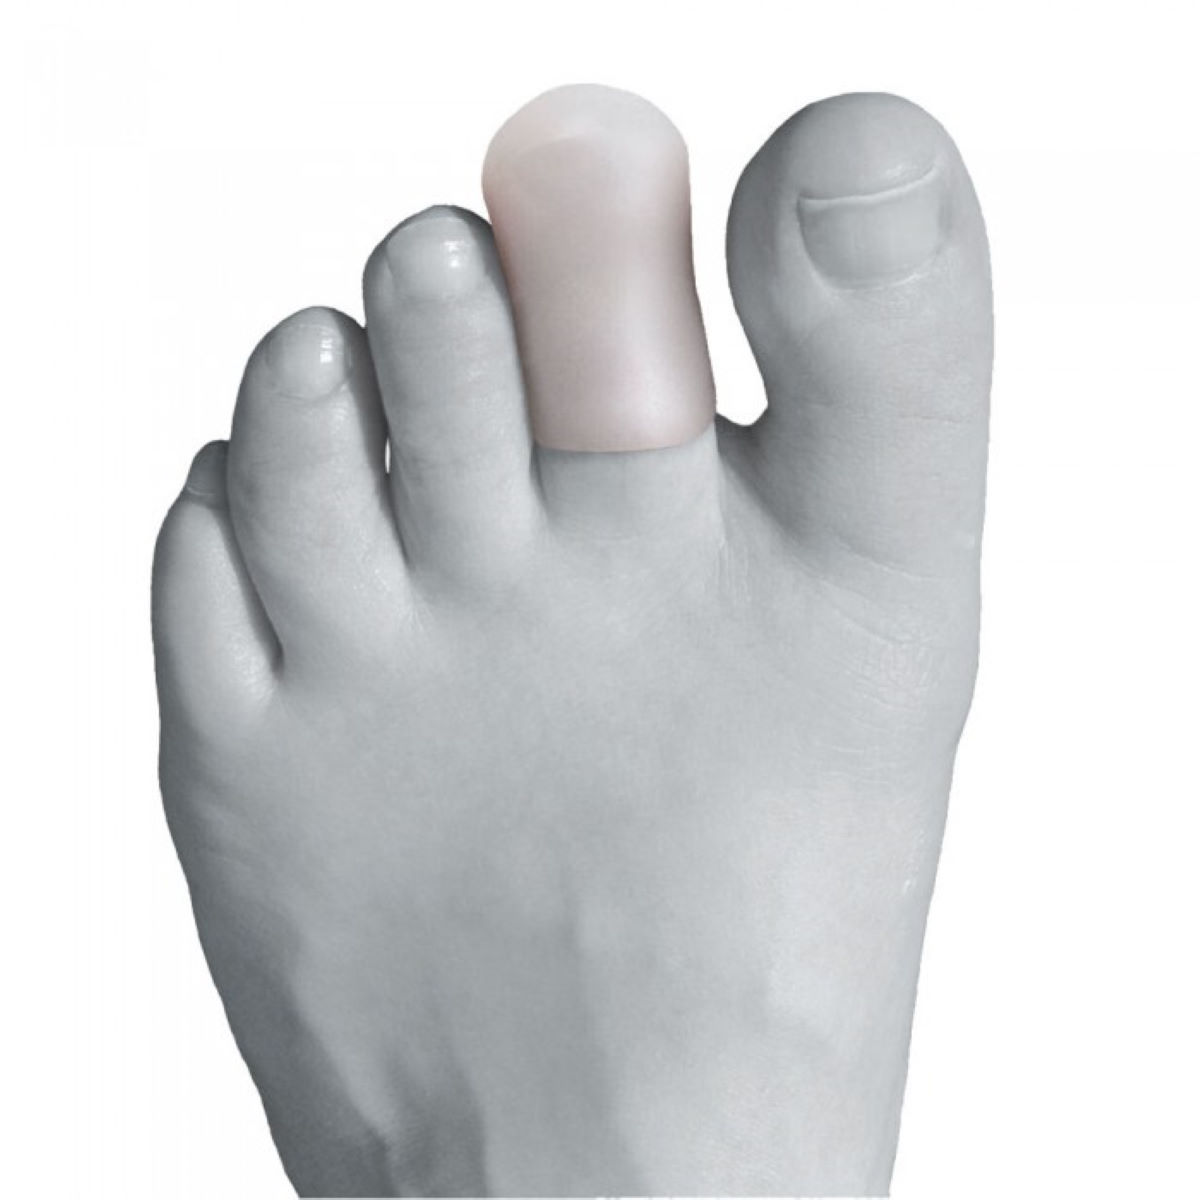 Protectores para los dedos del pie Ultimate Performance - Calcetines de sujeción